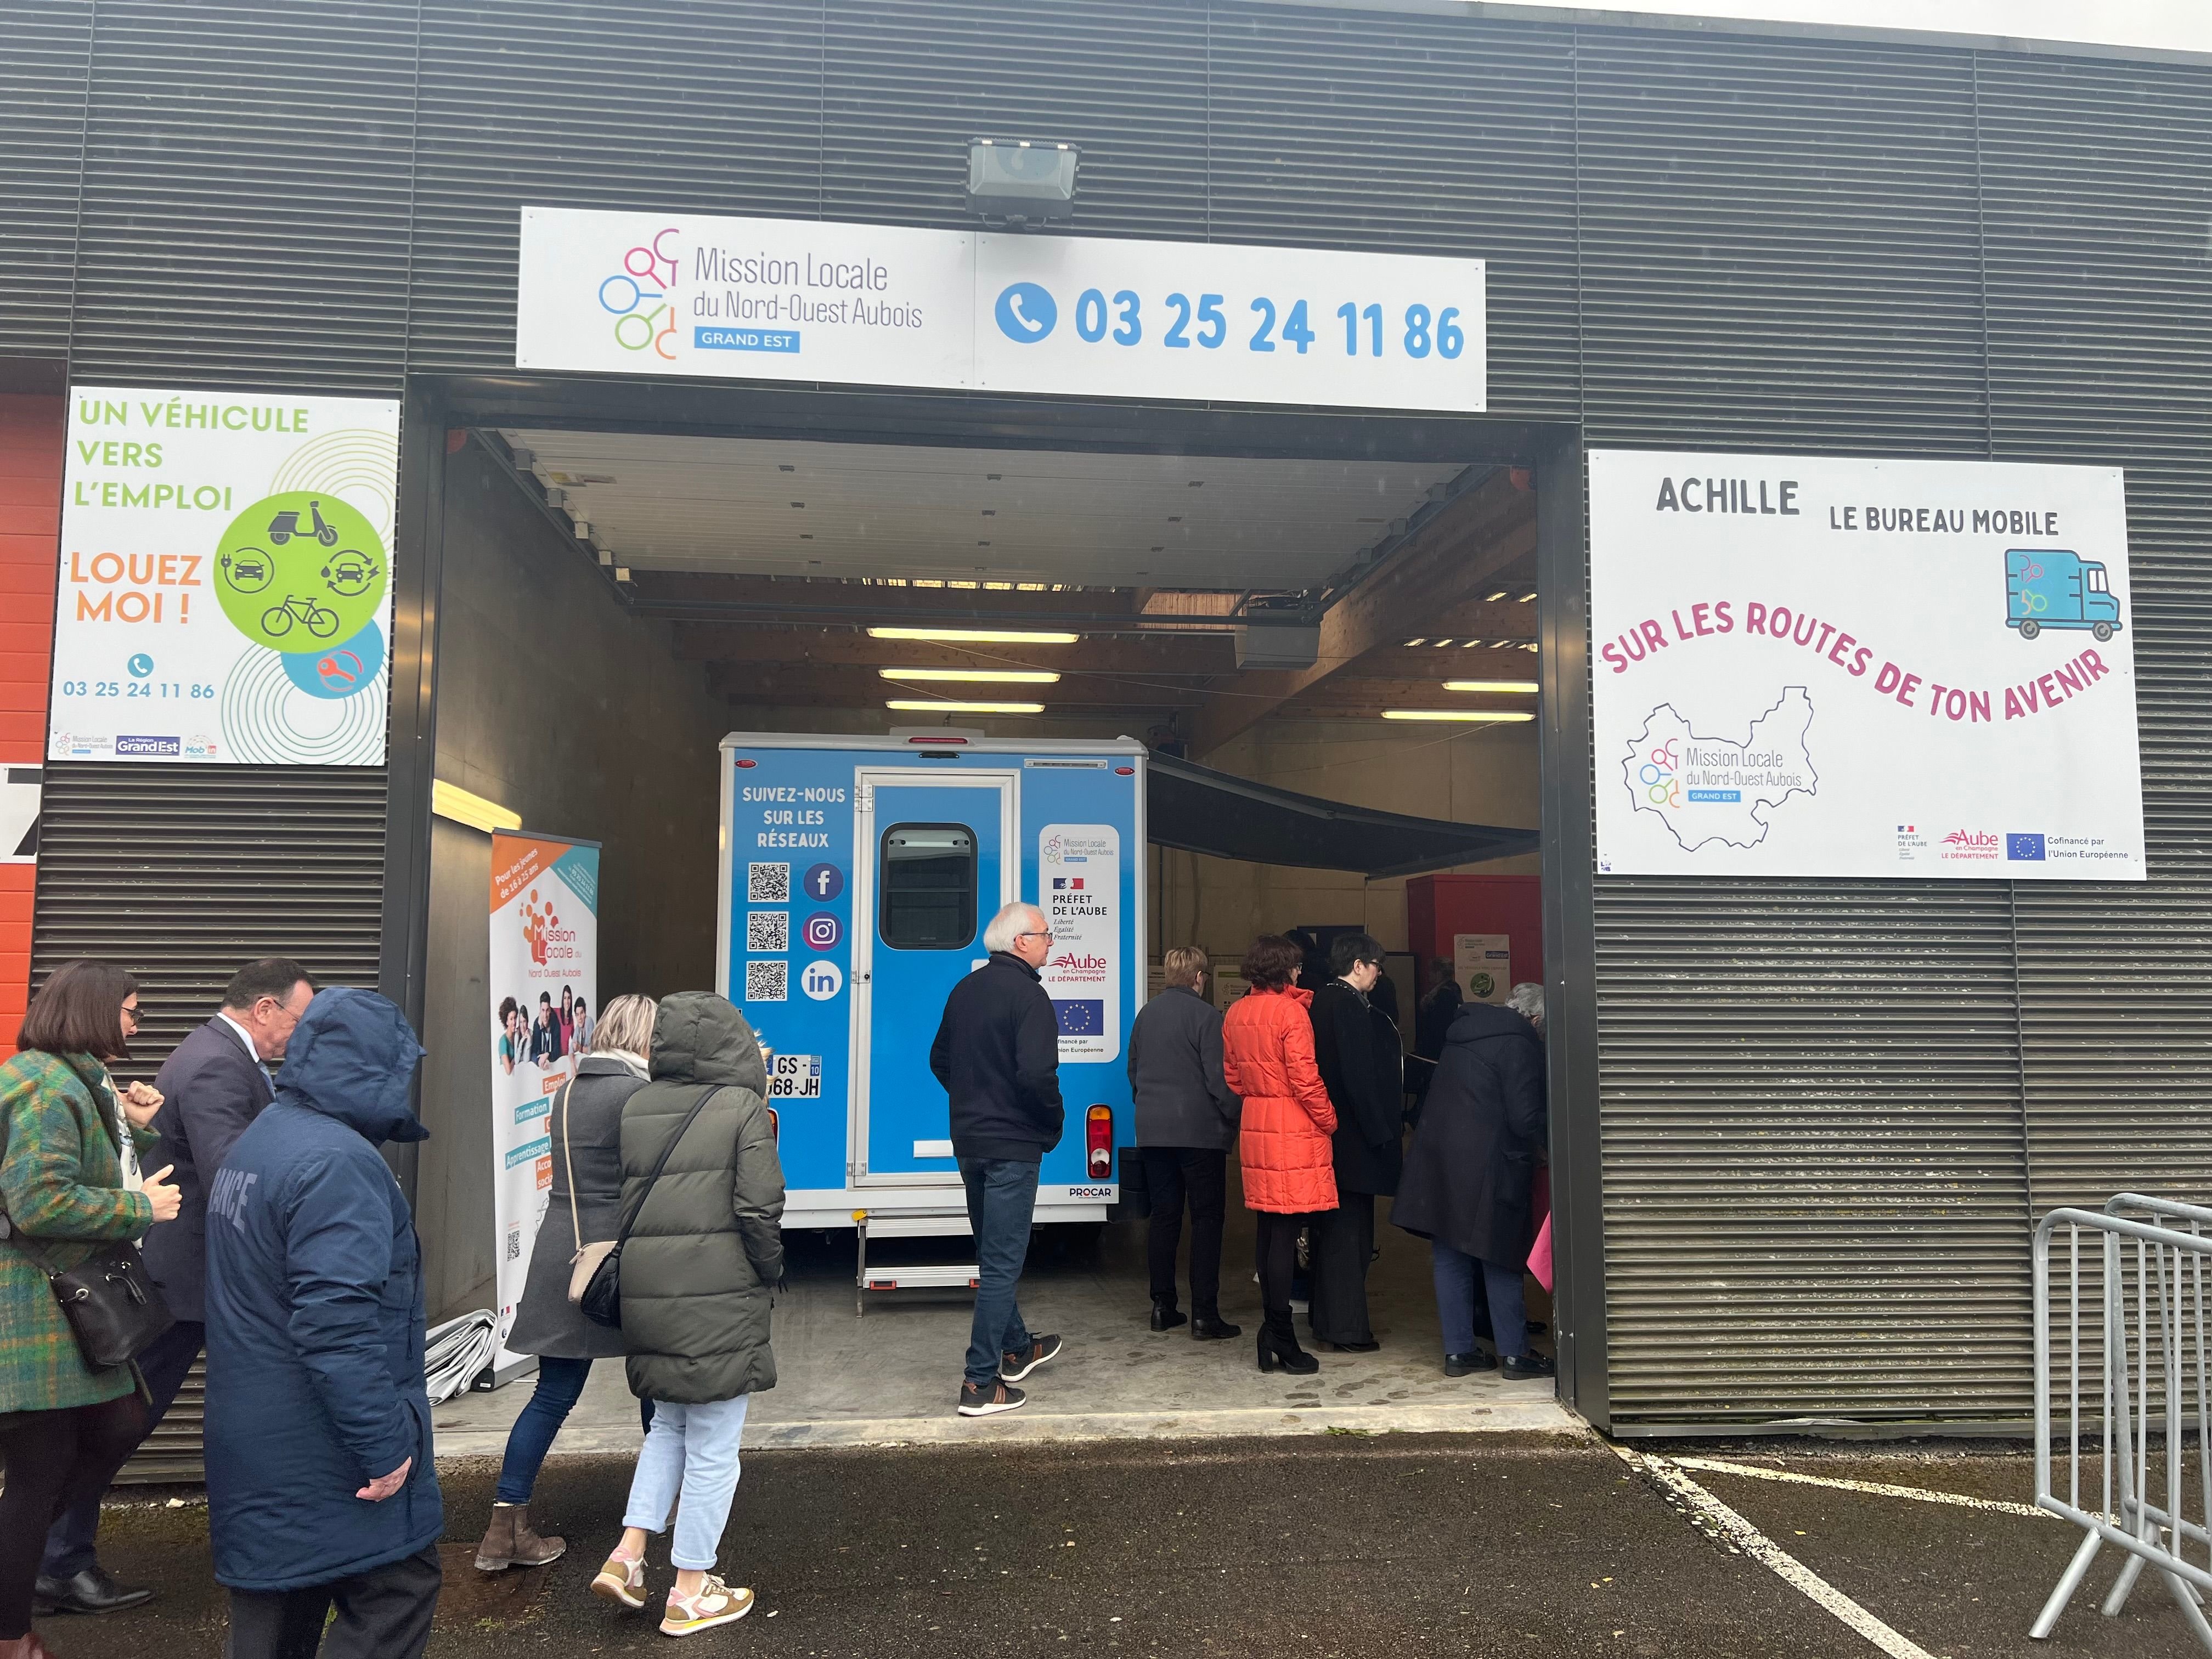 Le bureau mobile de la Mission Locale du Nord-Ouest aubois a été inauguré ce mercredi 6 mars à la mission Locale à Romilly-Sur-Seine. LP/Jonathan Sottas